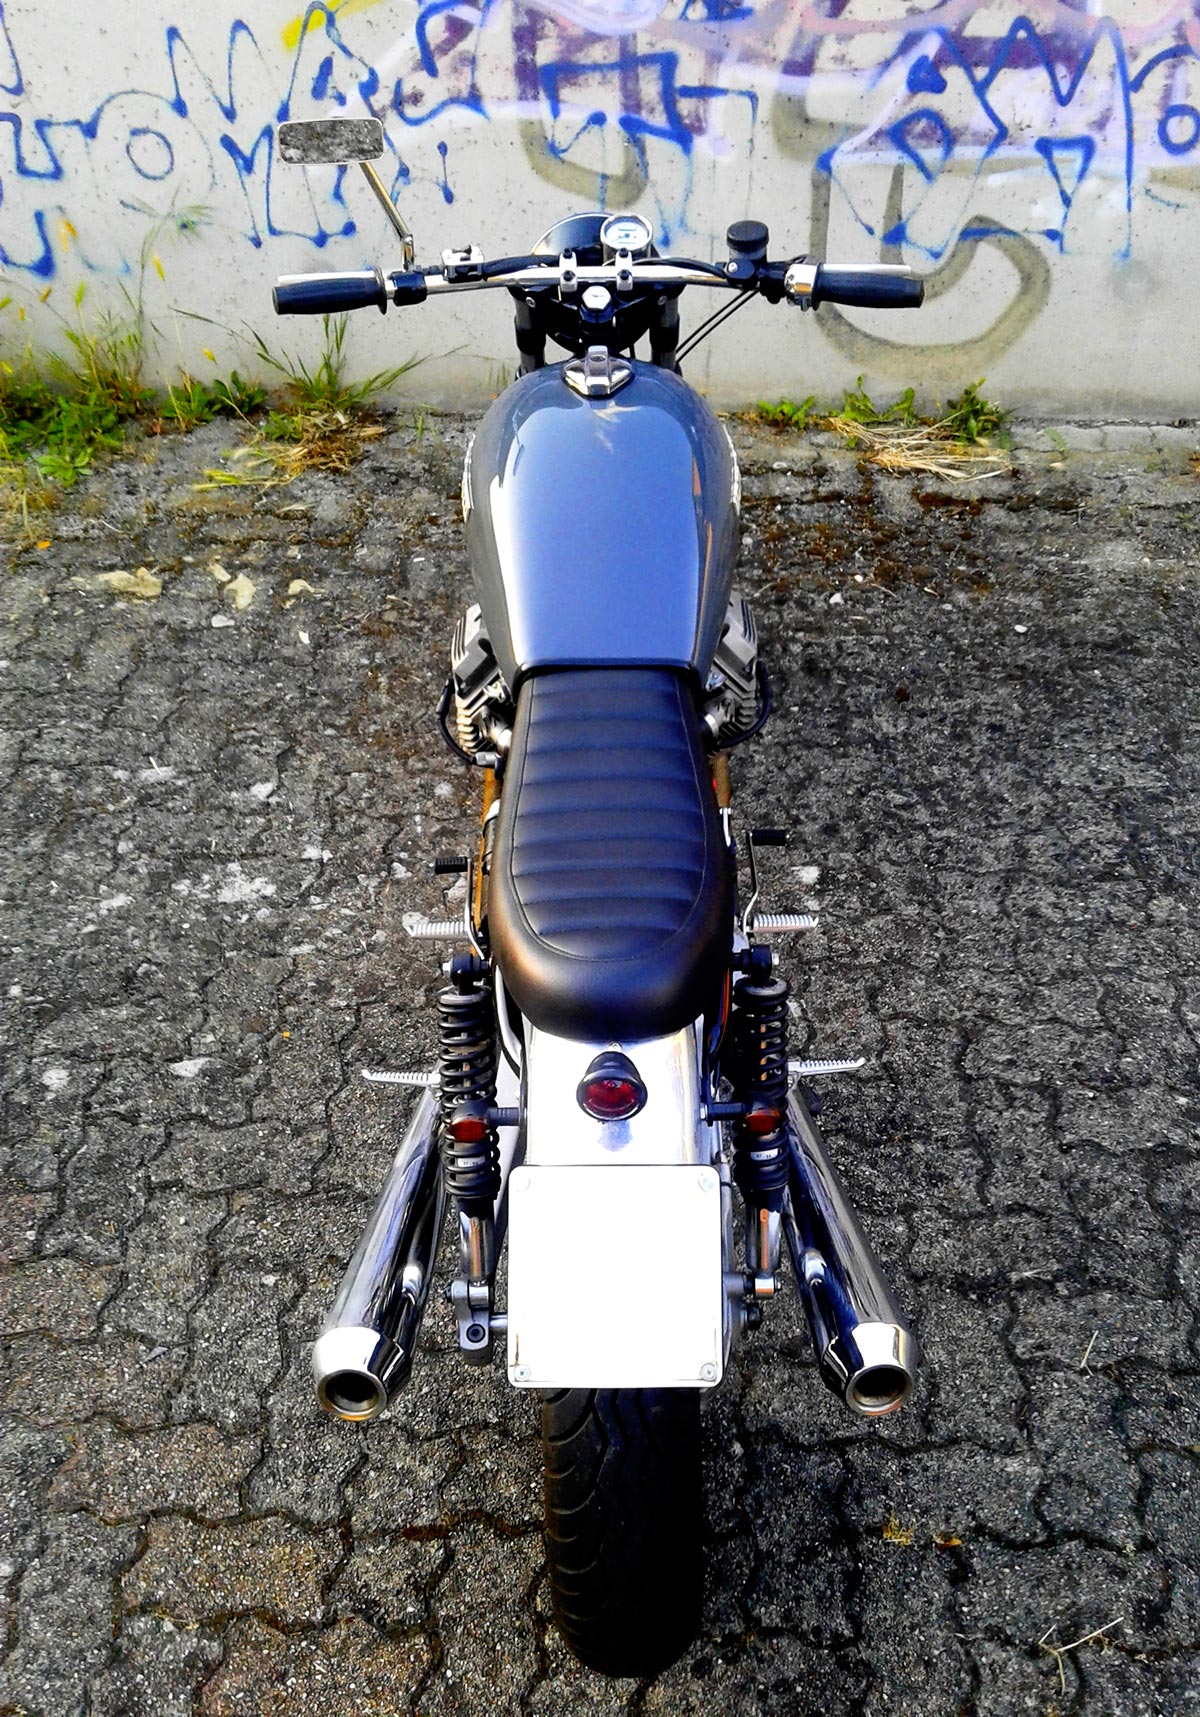 Moto Guzzi V35 brat style